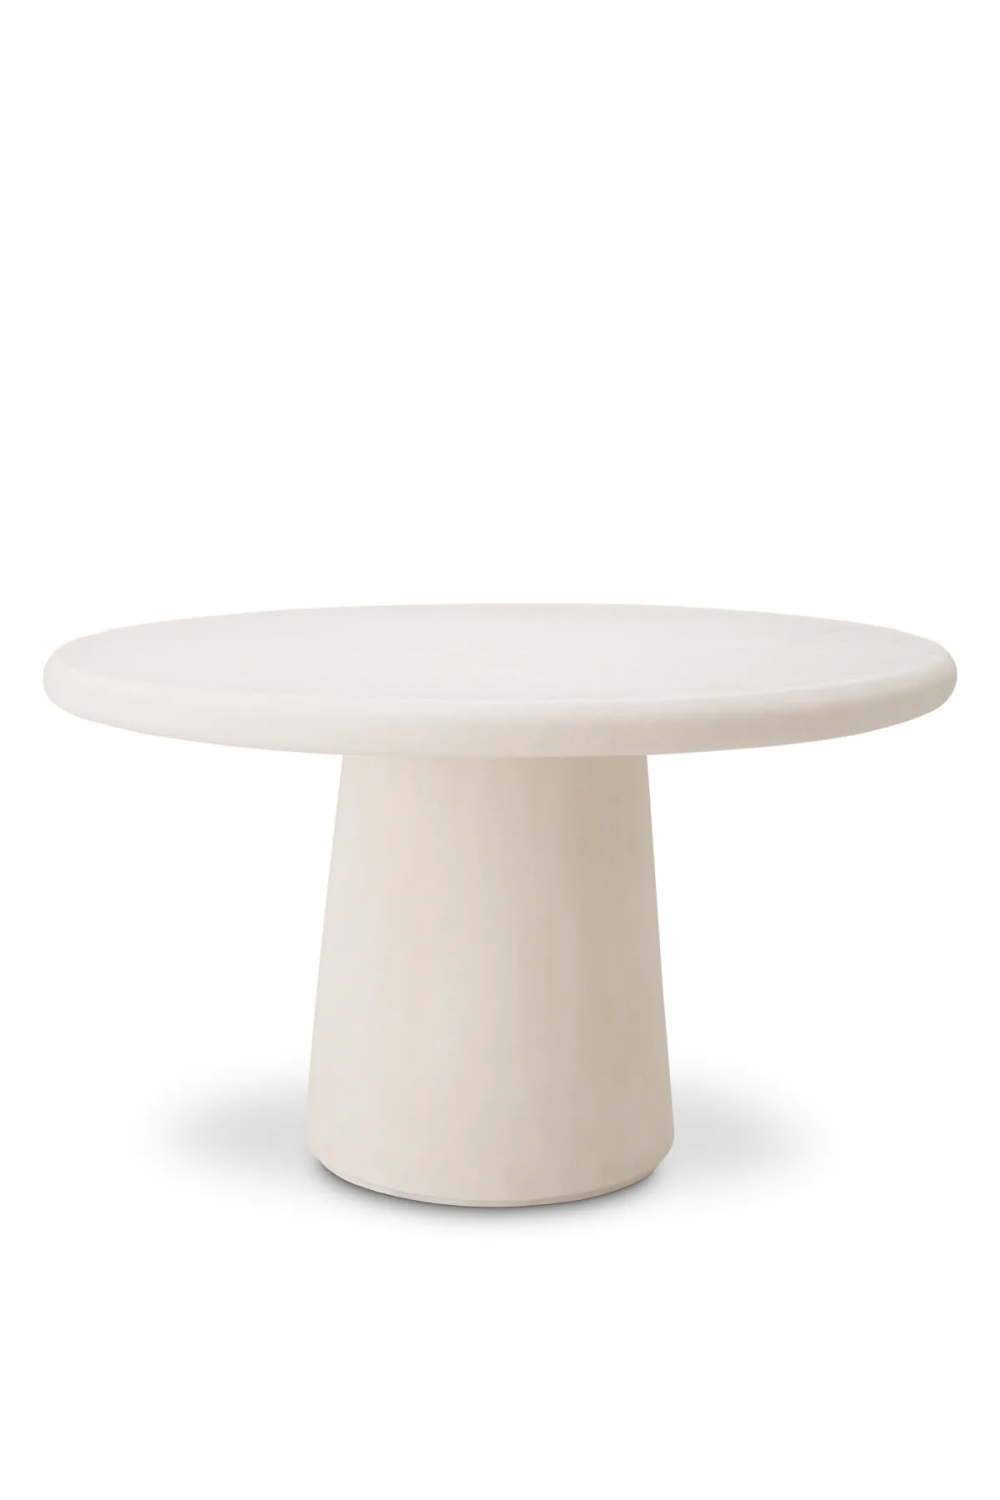 White Round Outdoor Dining Table M | Eichholtz Cleon | Oroa.com